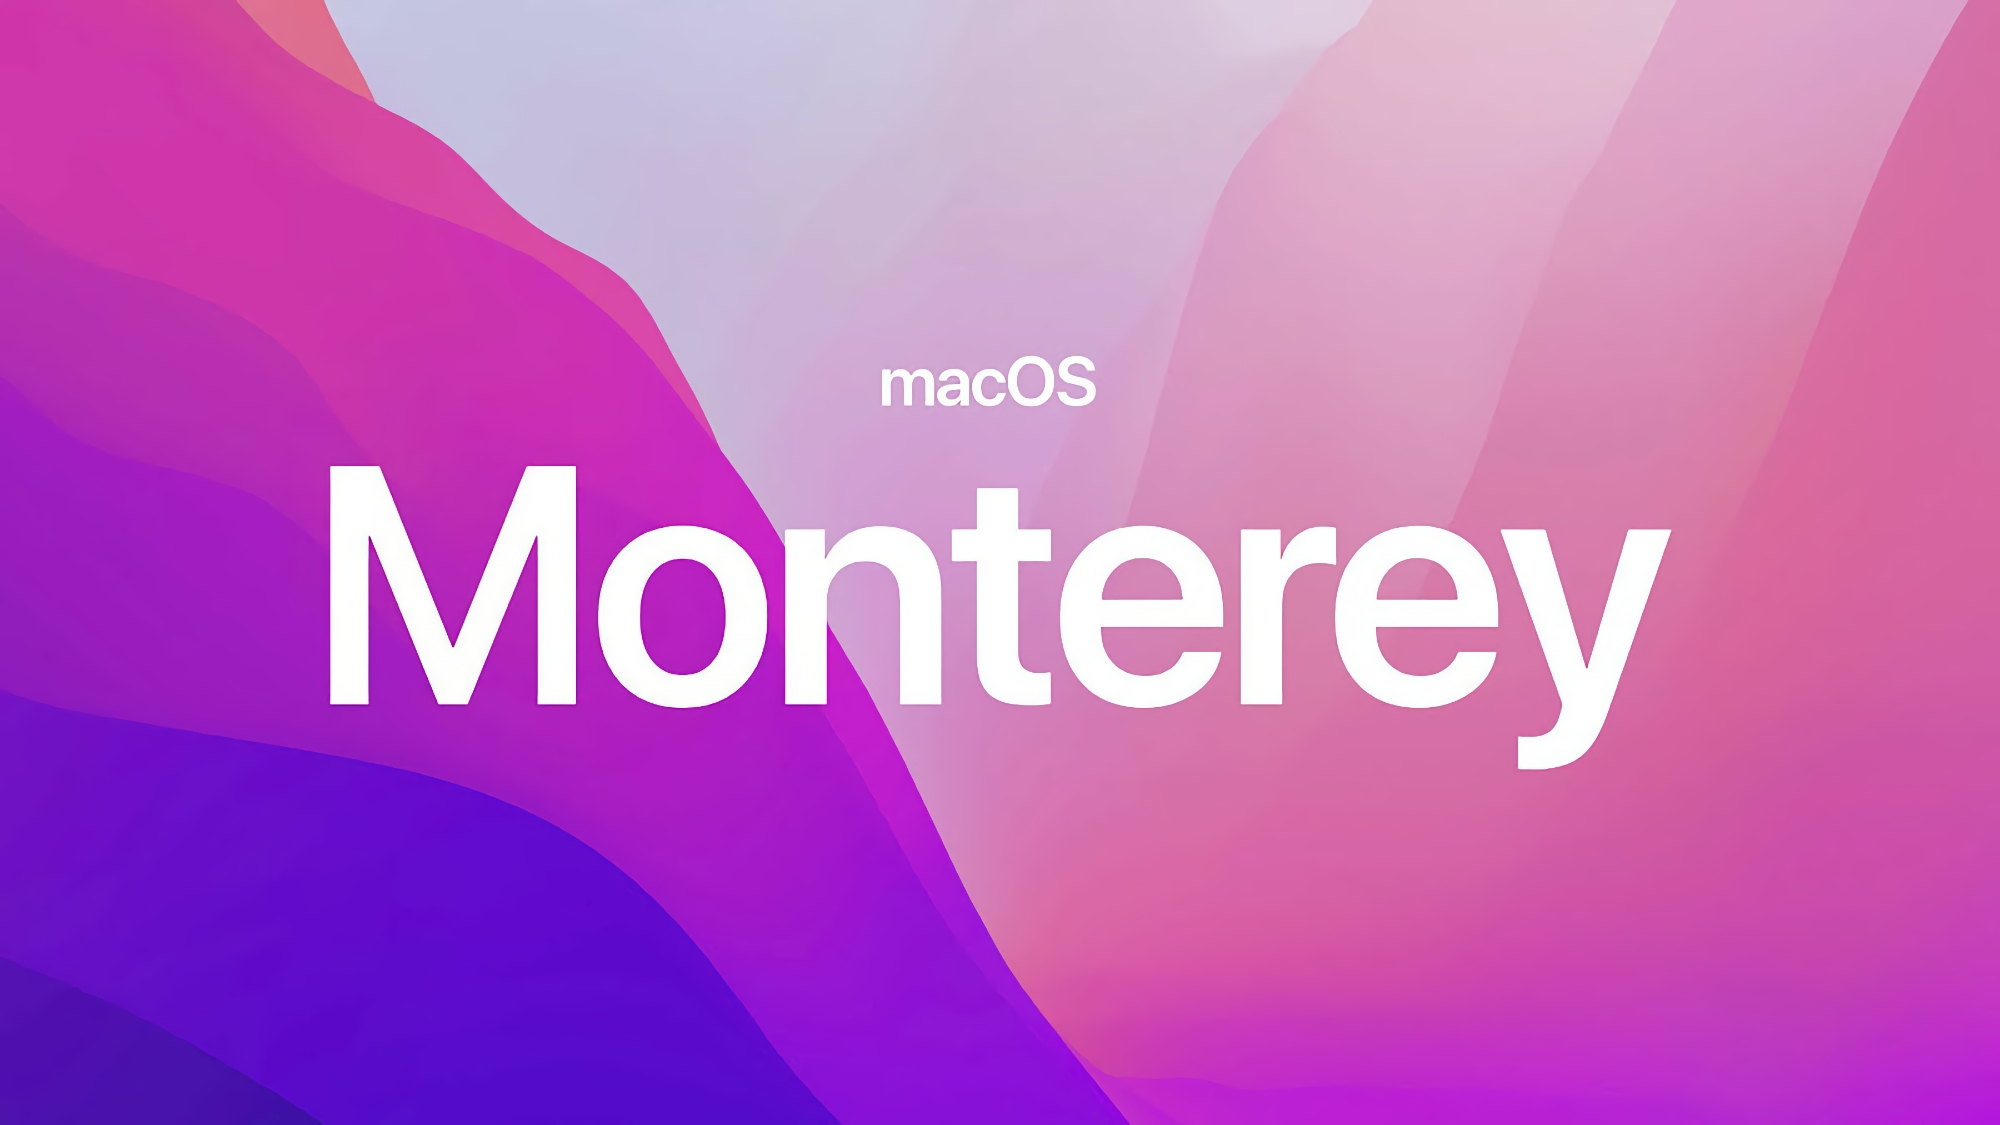 Po iOS 15.6.1: Apple ogłasza macOS Monterey 12.5.1 z ulepszonymi zabezpieczeniami